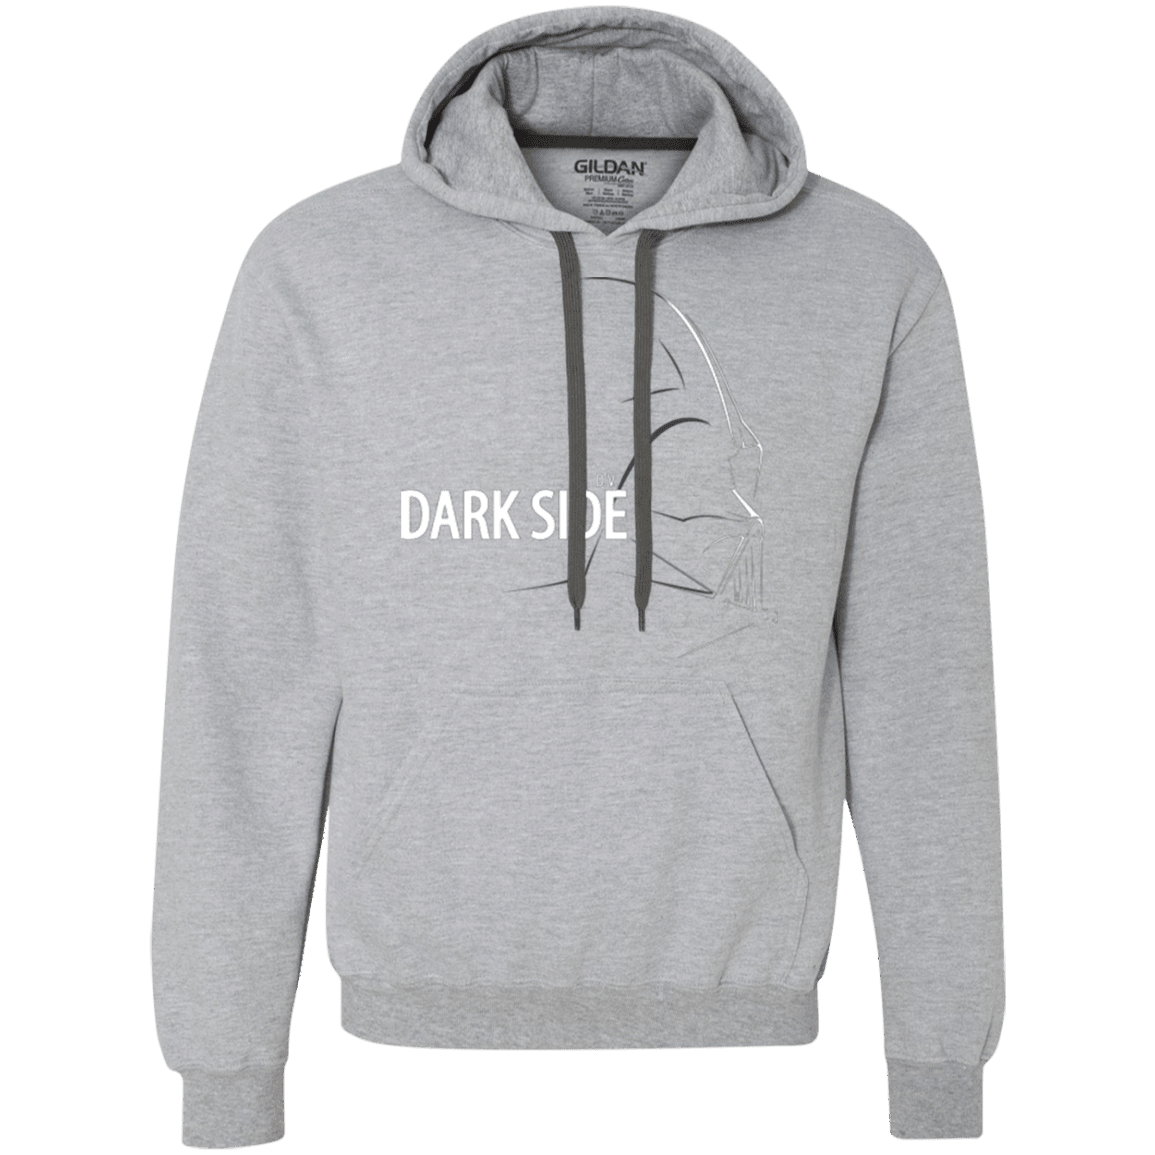 Sweatshirts Sport Grey / Small DARKSIDE Premium Fleece Hoodie